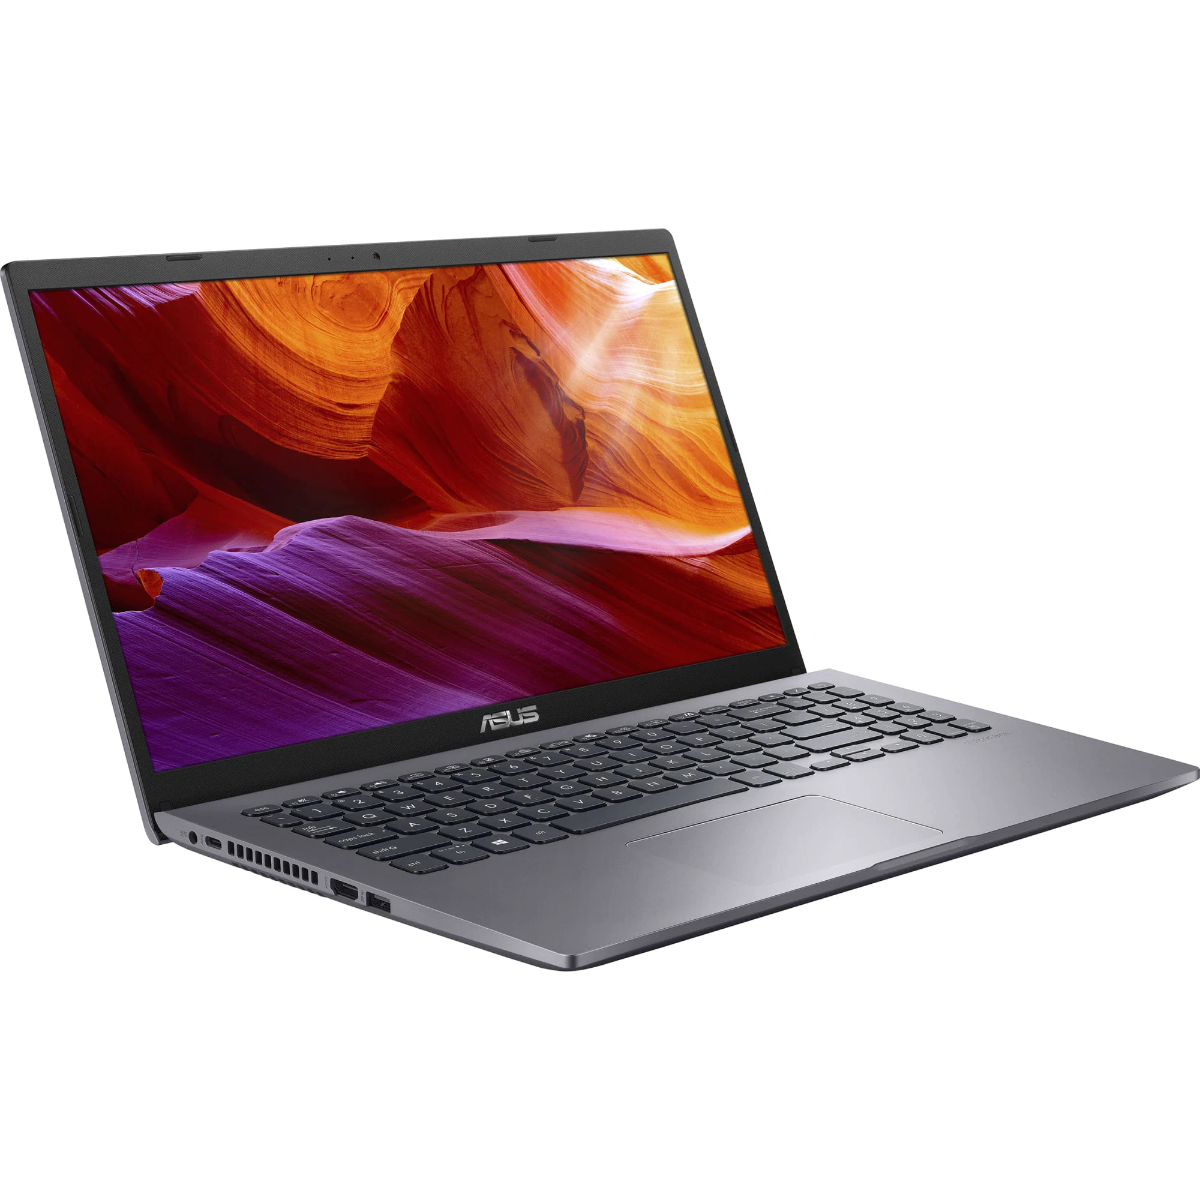 Laptop Asus X509JB-EJ005, 15.6, Intel Core i5-1035G1, Full HD, 8GB, SSD 512GB, NVIDIA GeForce MX110 2GB, Free DOS, Slate Gray